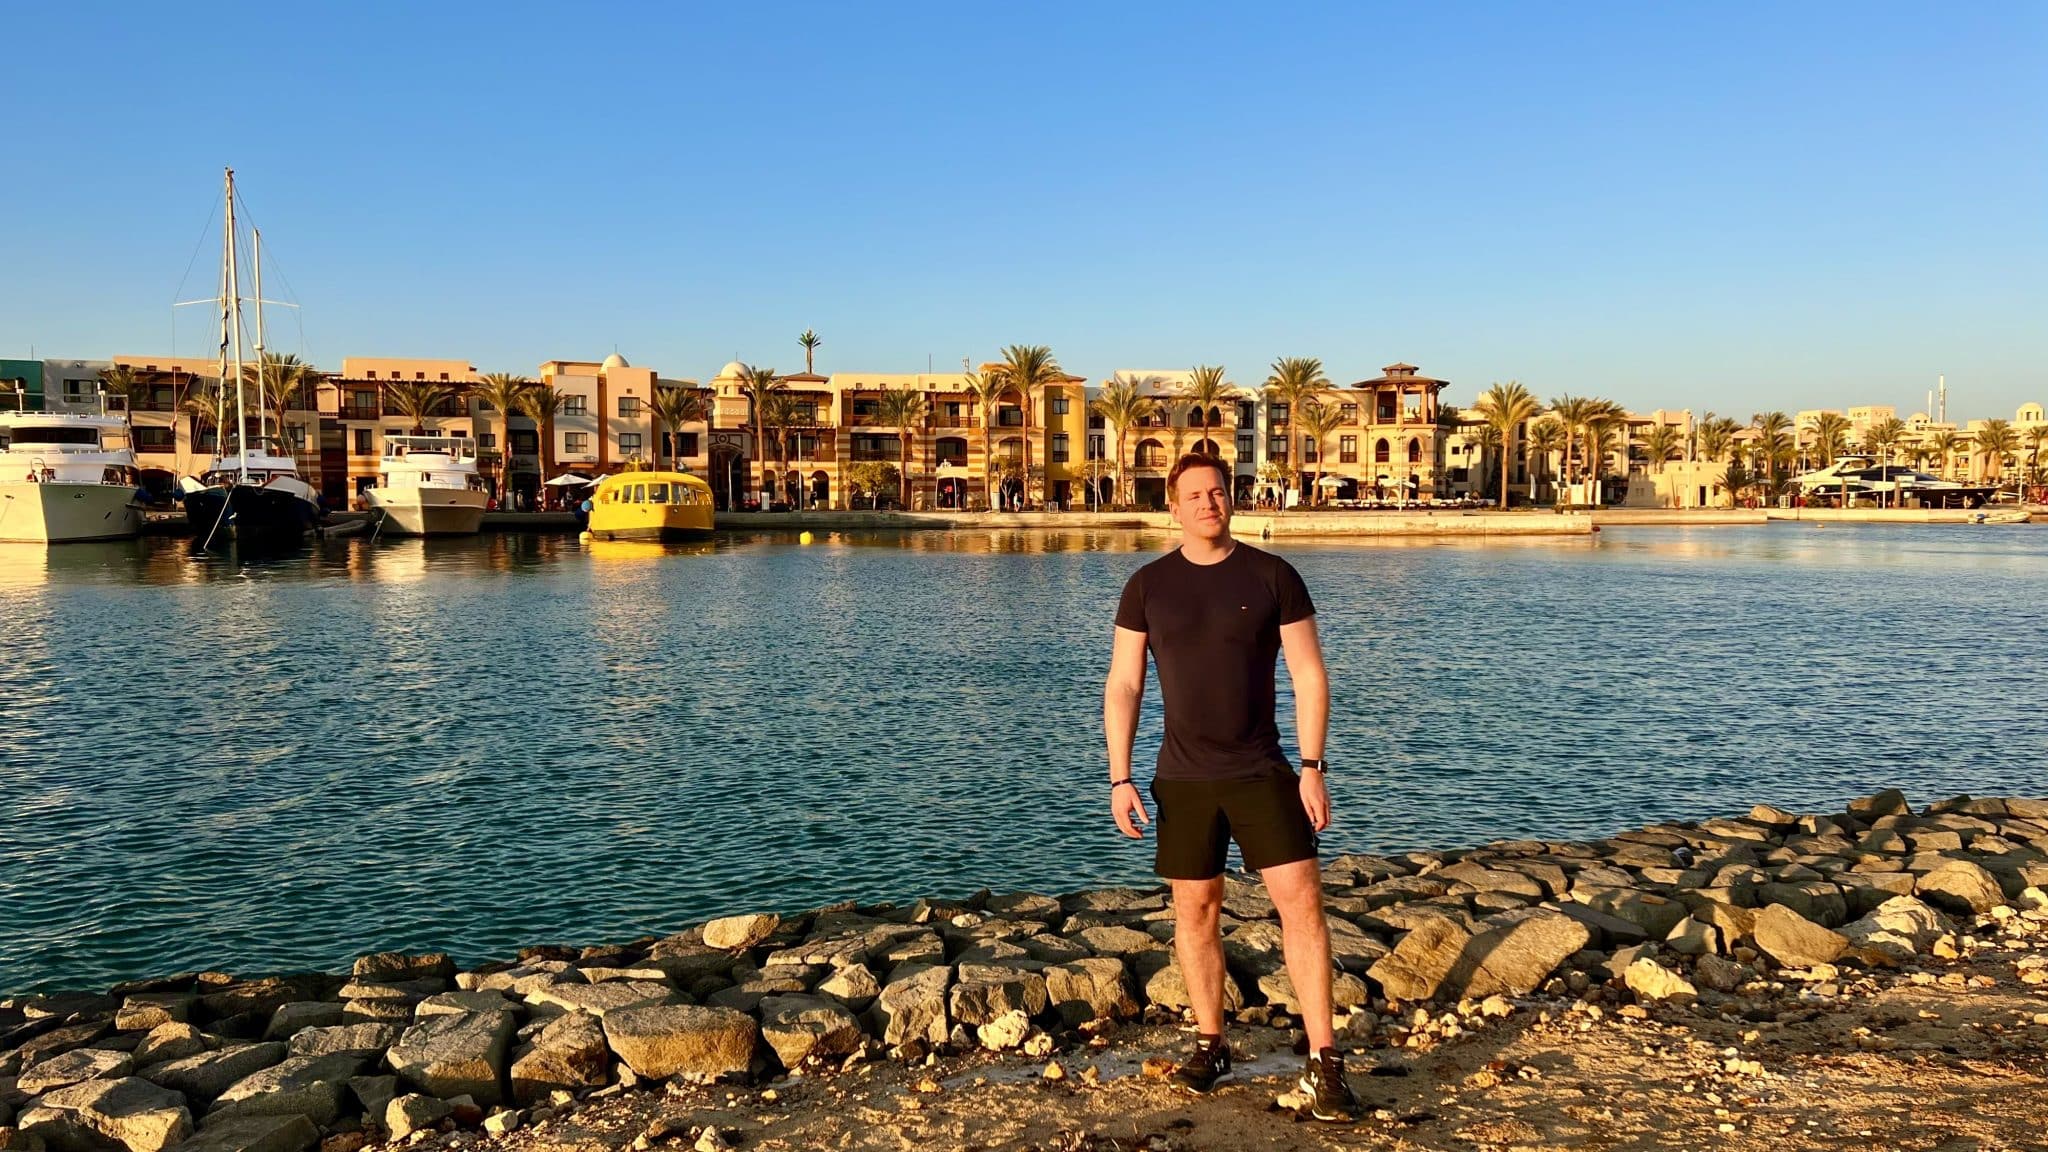 Raport z joggingu w Egipcie – spacer po pustyni?